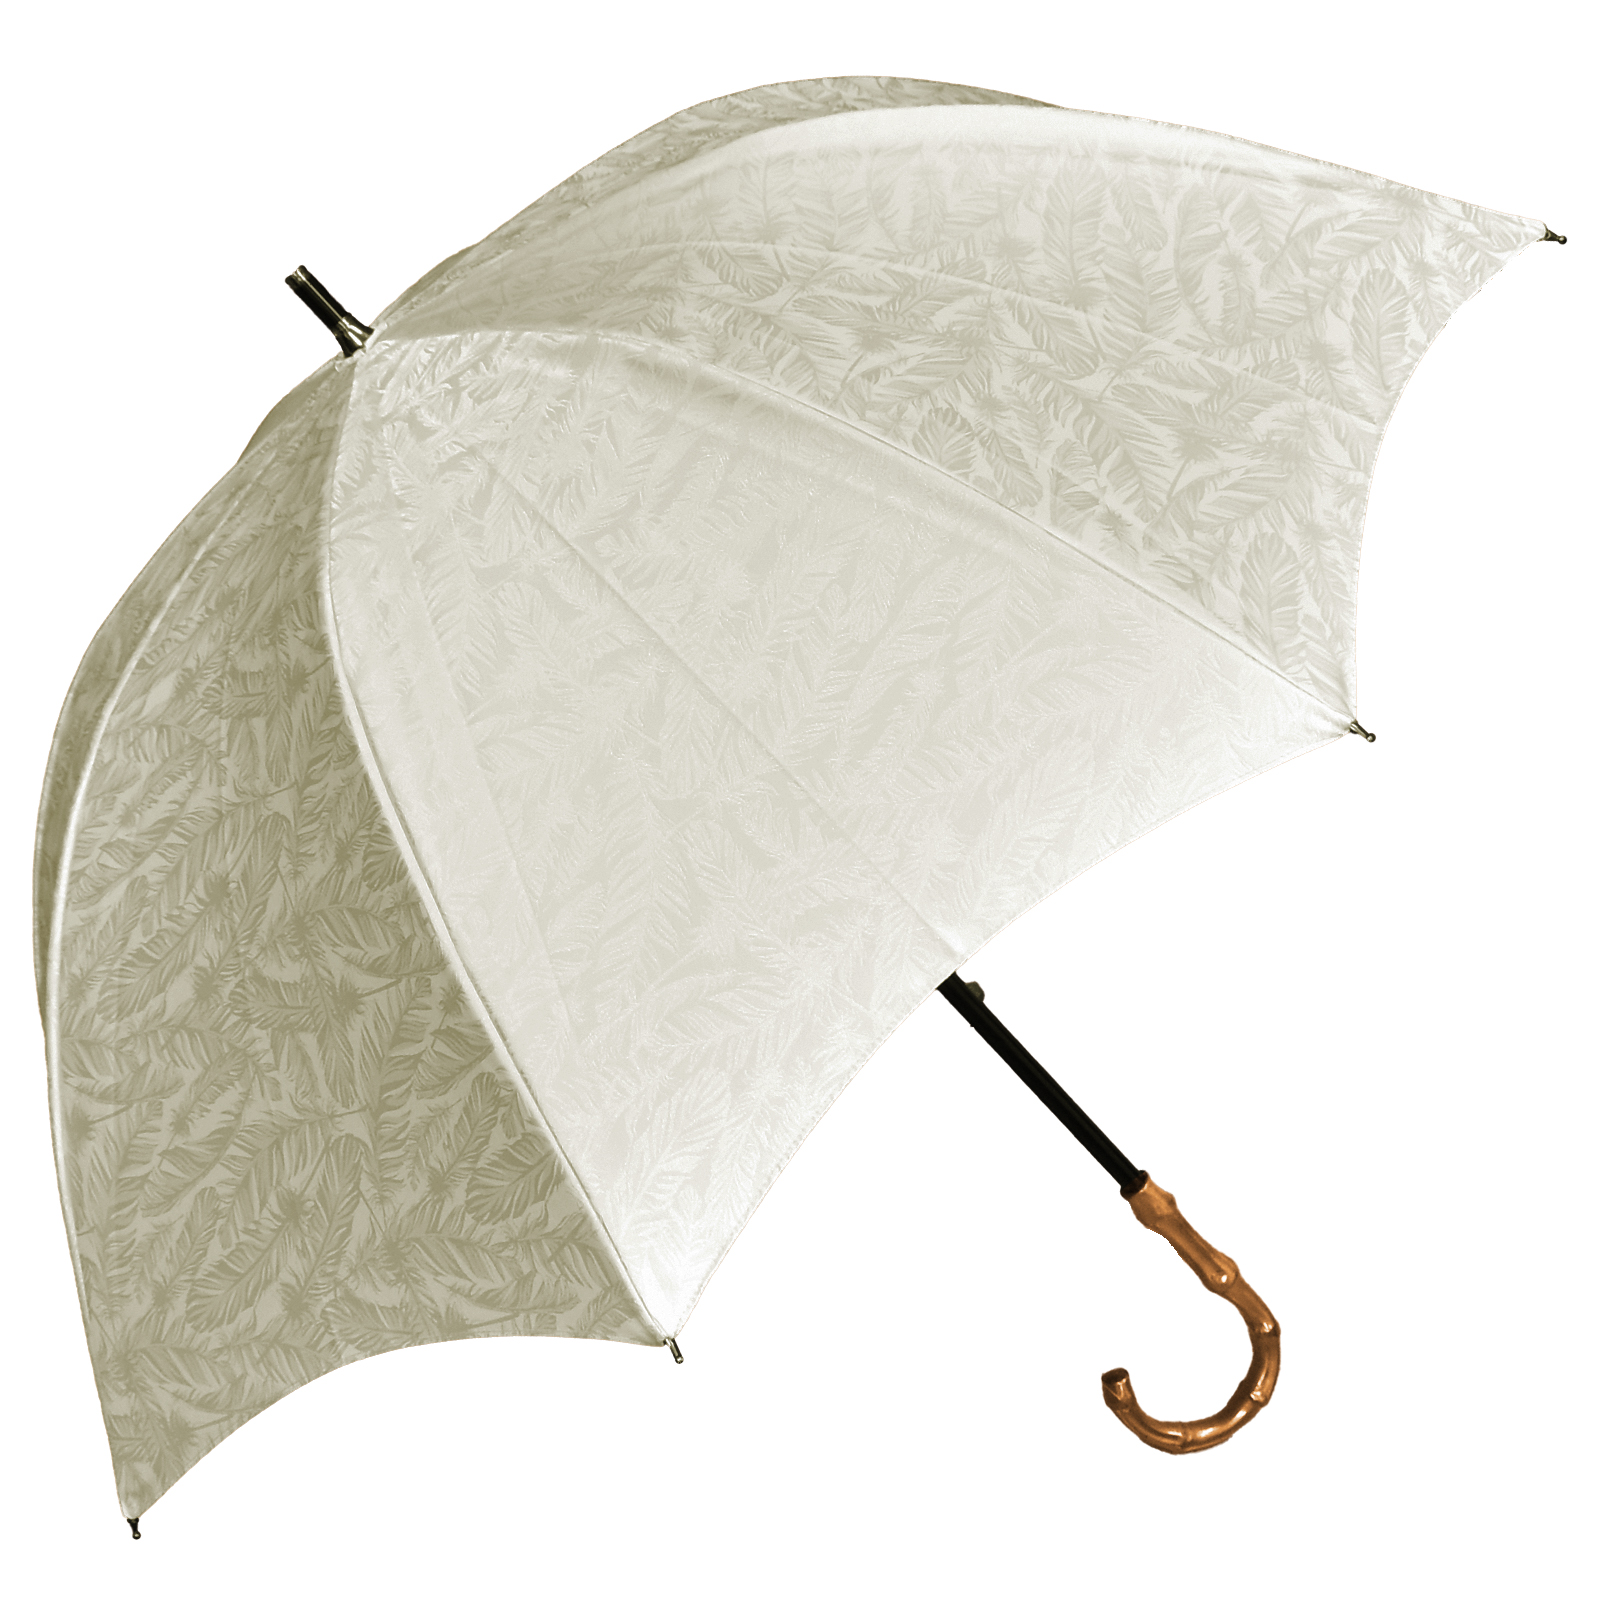 日傘 完全遮光 長傘 uv 晴雨兼用 1級遮光 遮熱 涼しい おしゃれ 軽量 完全遮光 プレーン フ...